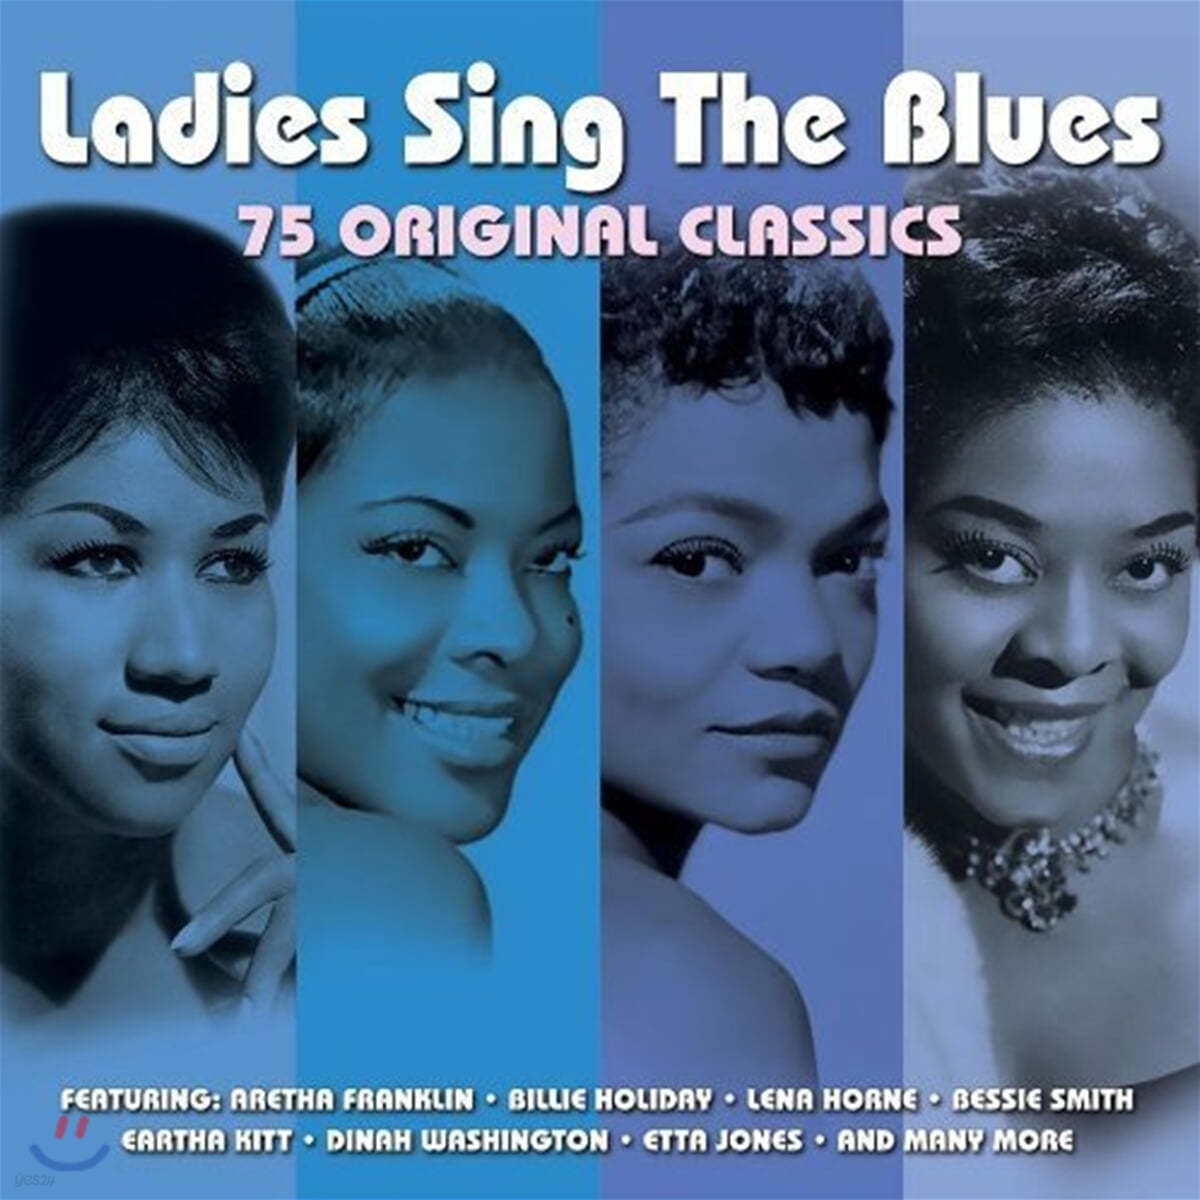 여성 가수들이 부르는 블루스 음악 (Ladies Sing the Blues)